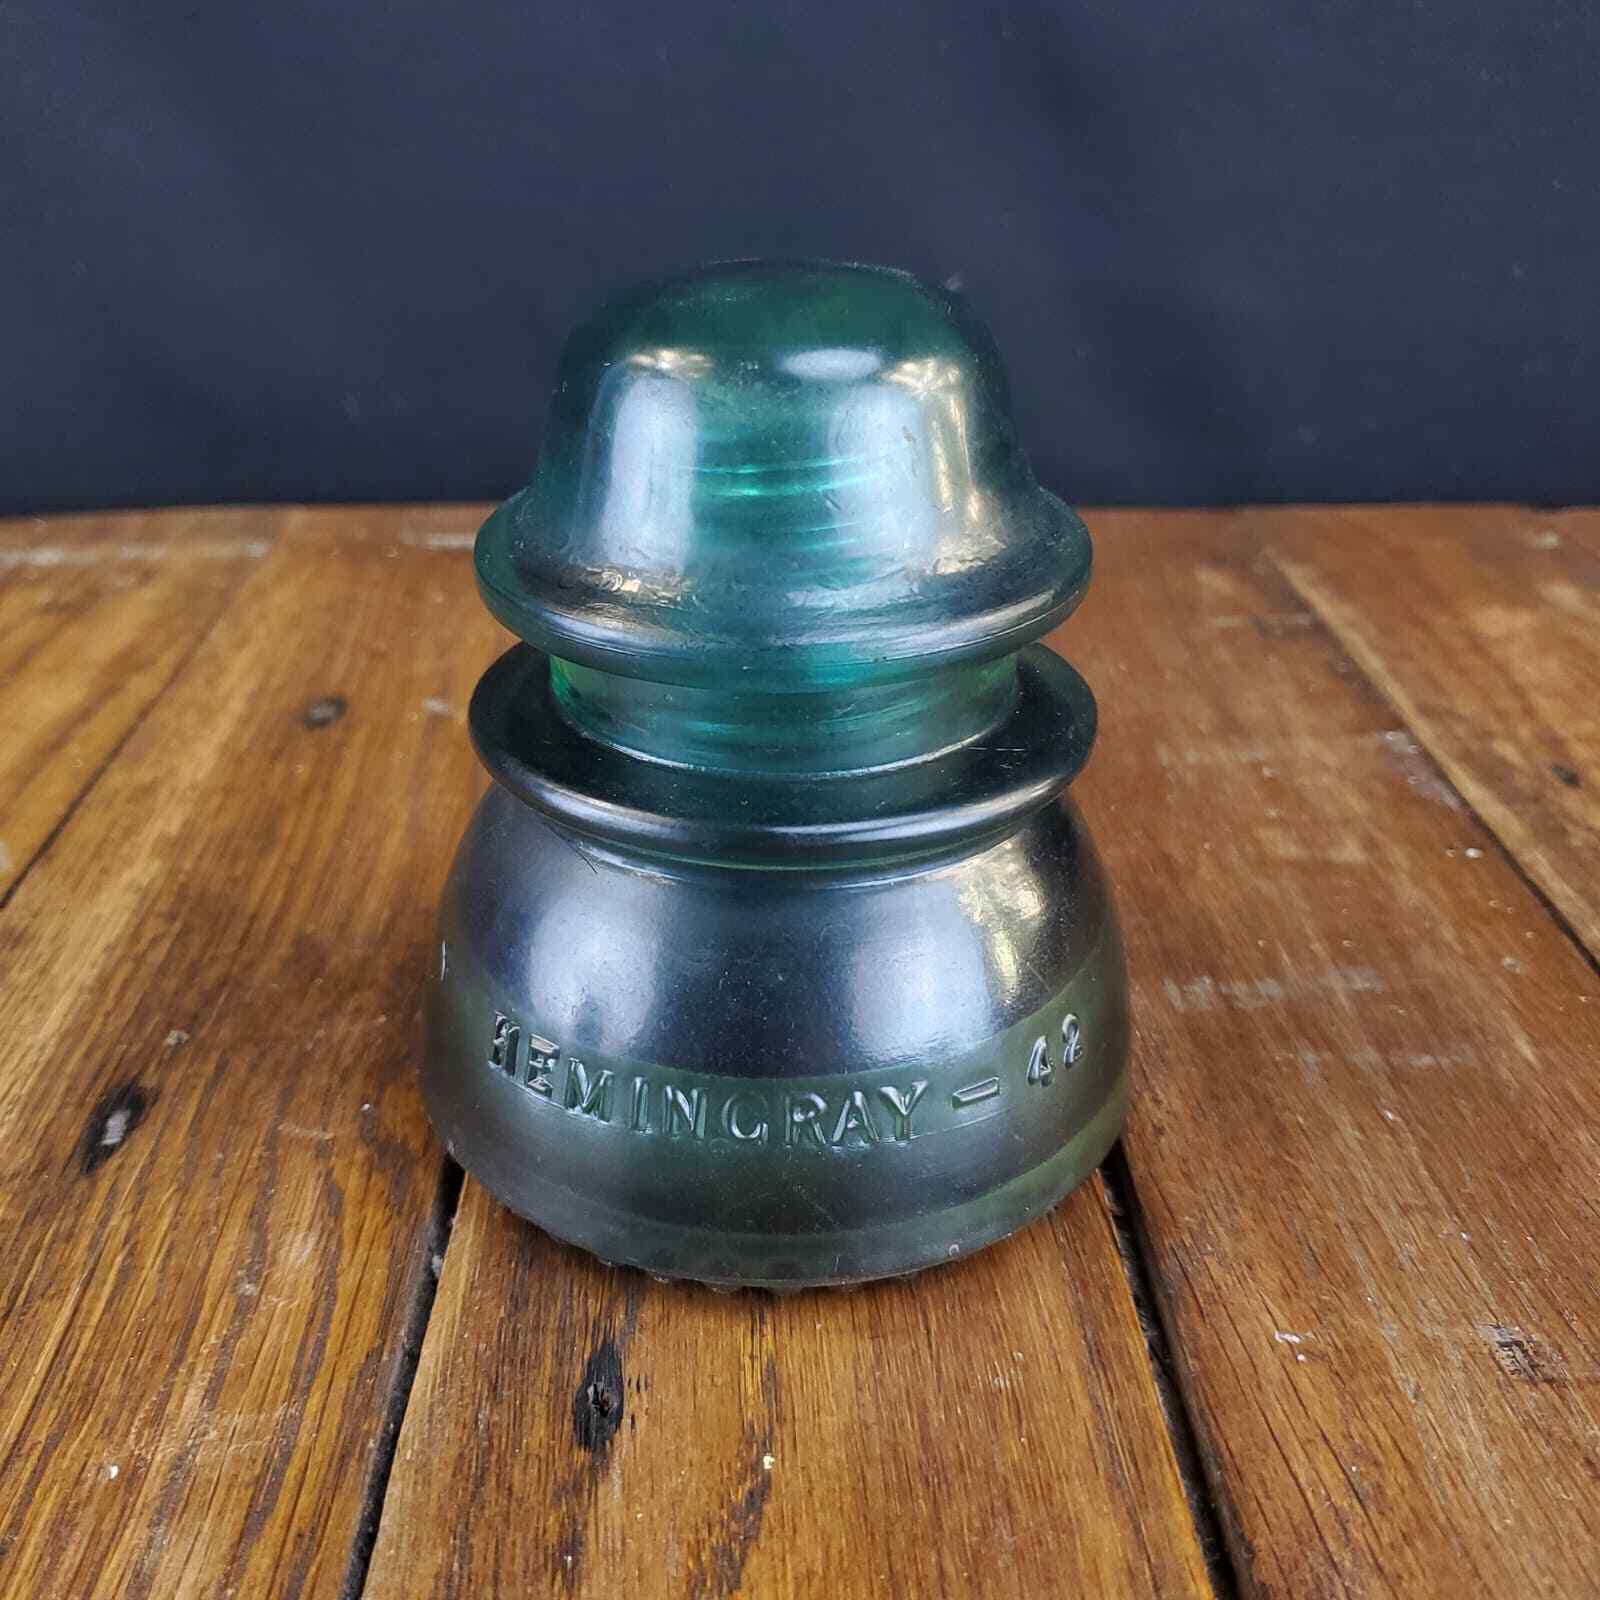 Hemingray No 42 Threaded Glass Insulator Vintage Antique Aqua Blue Green